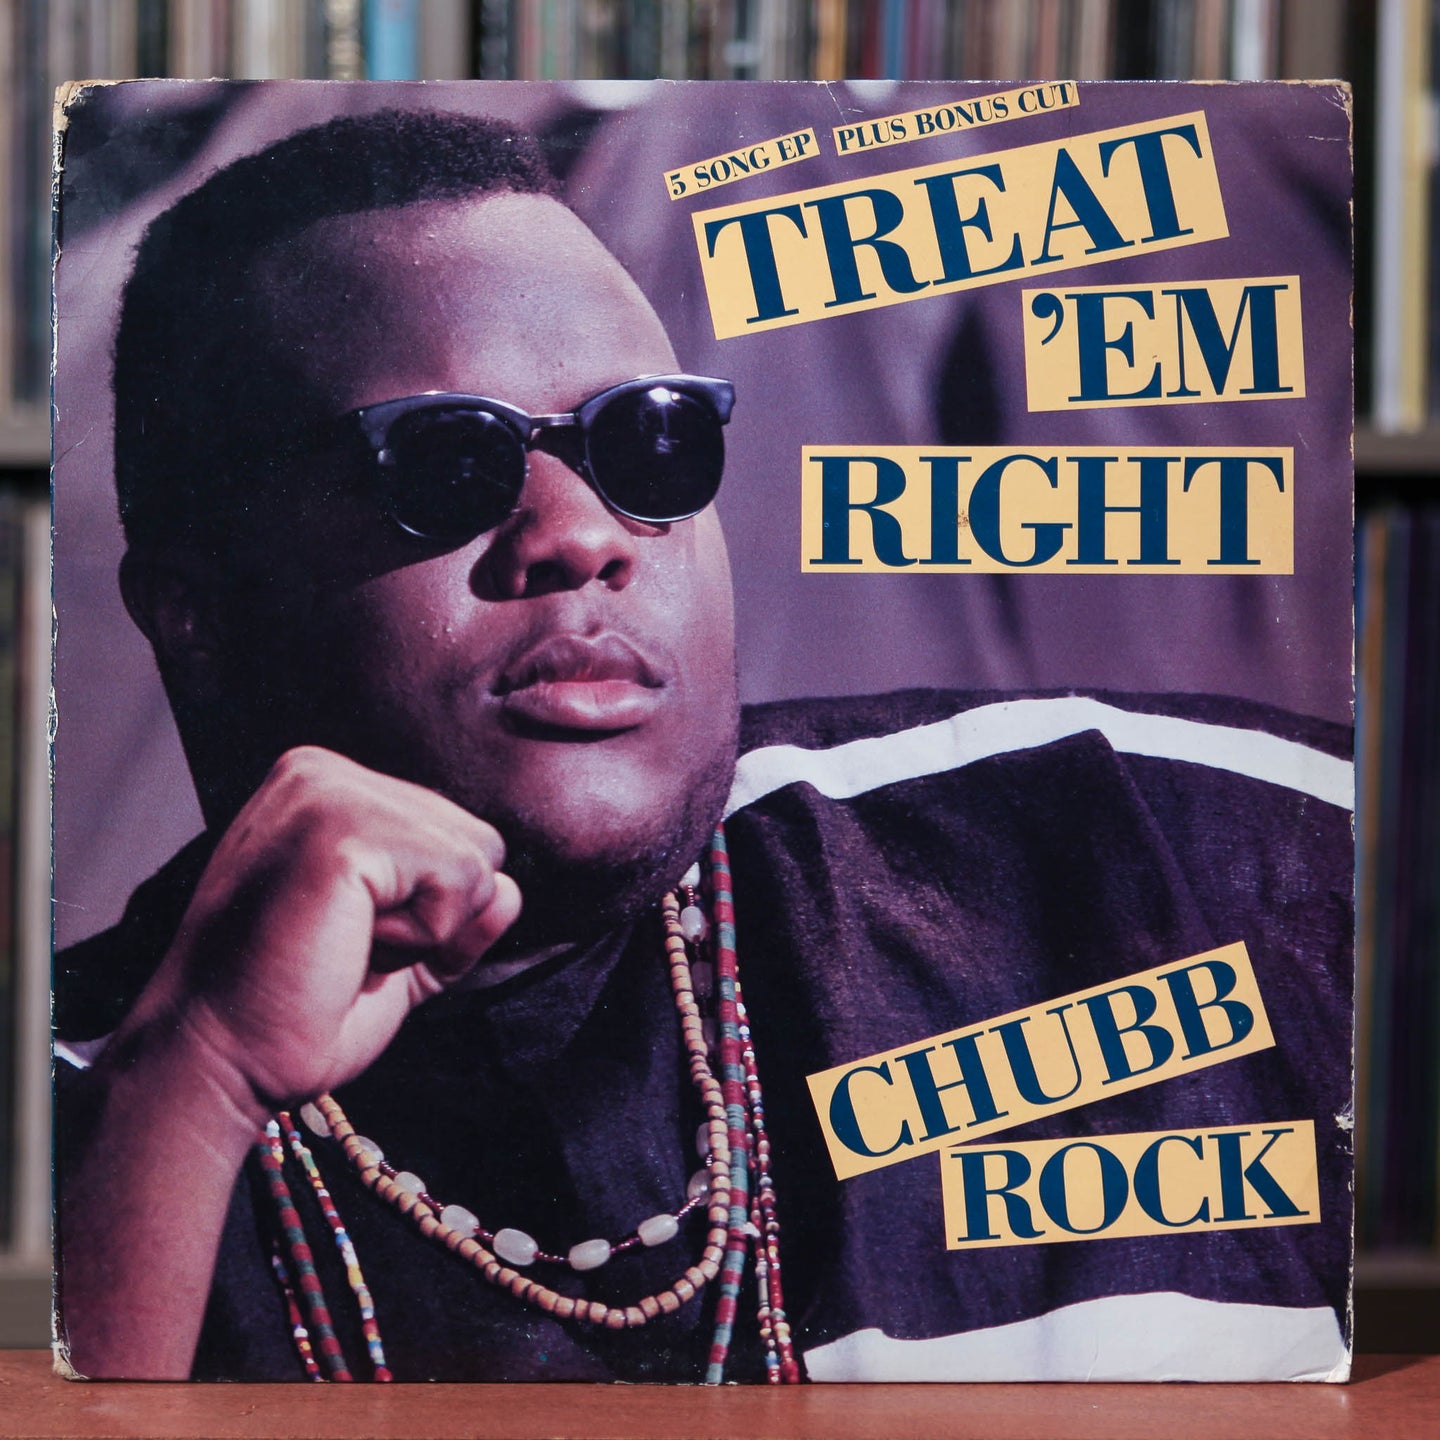 Chubb Rock - Treat 'Em Right - 12